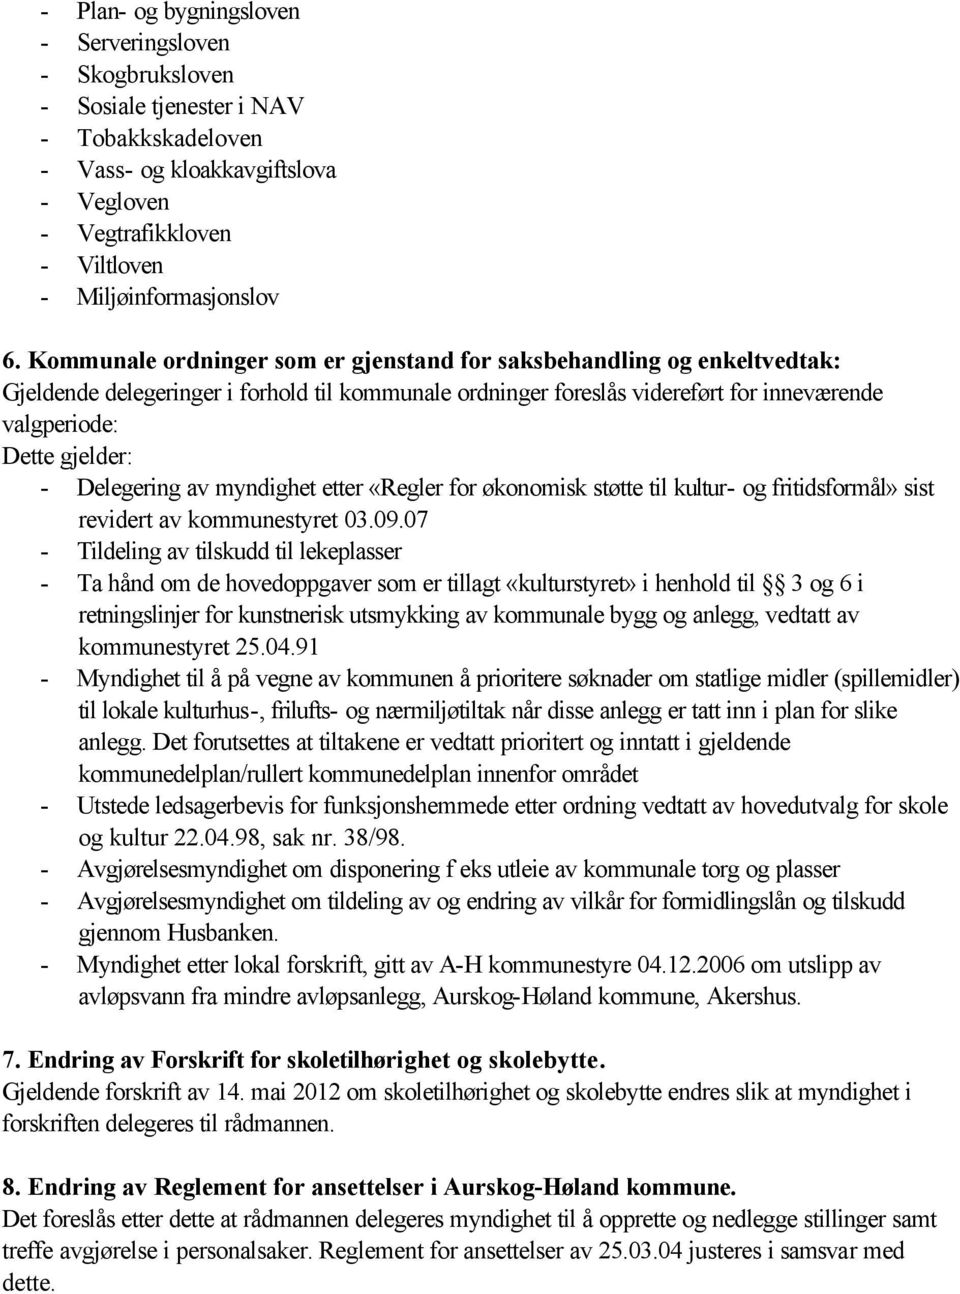 Delegering av myndighet etter «Regler for økonomisk støtte til kultur- og fritidsformål» sist revidert av kommunestyret 03.09.